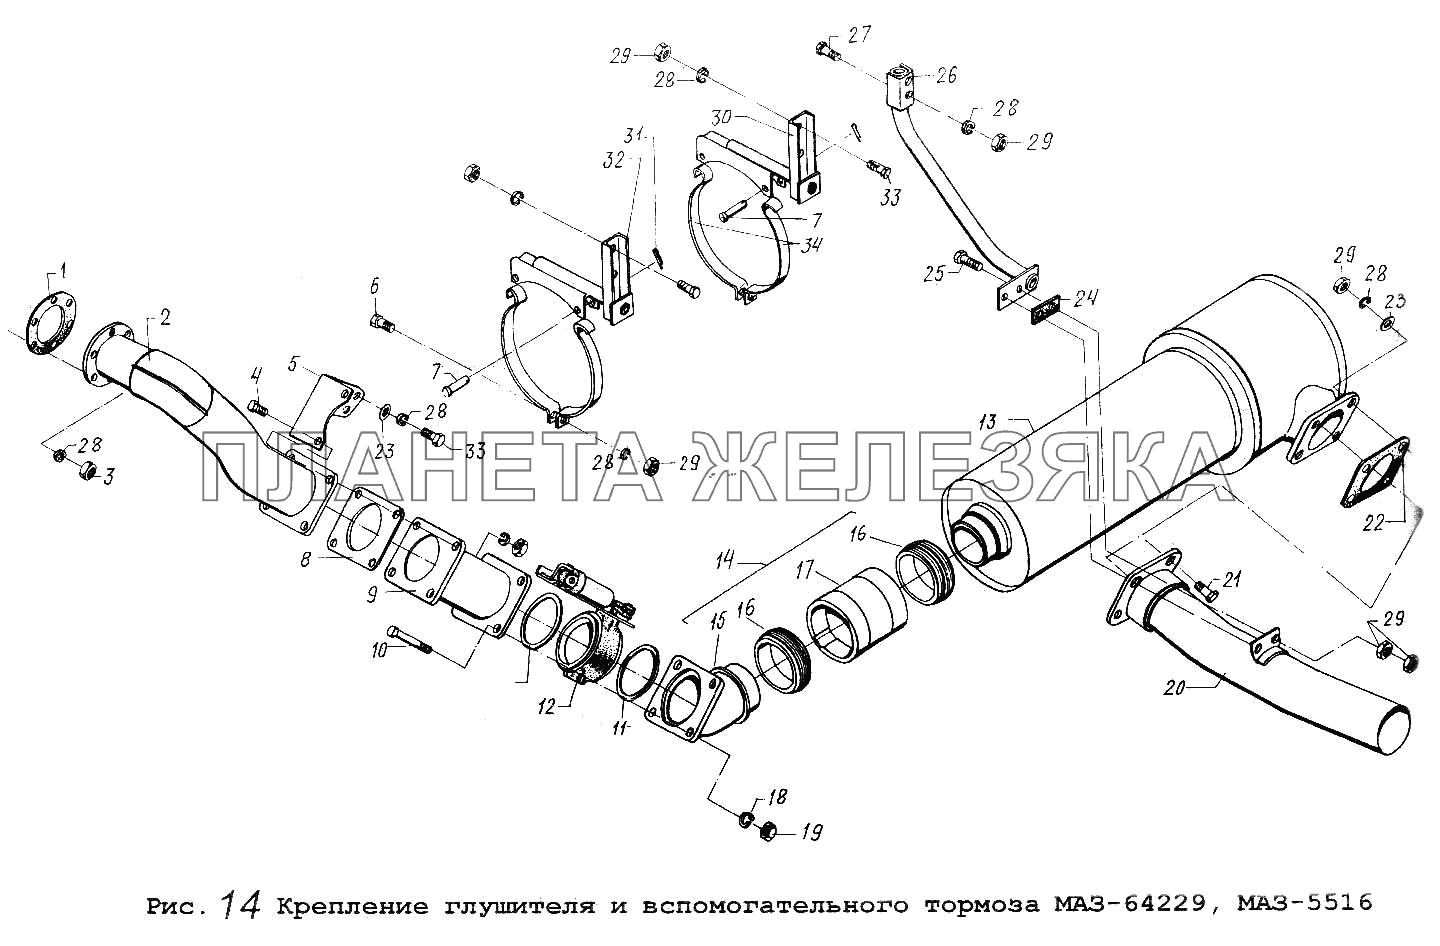 Крепление глушителя и вспомогательного тормоза МАЗ-64229, МАЗ-5516 МАЗ-64229